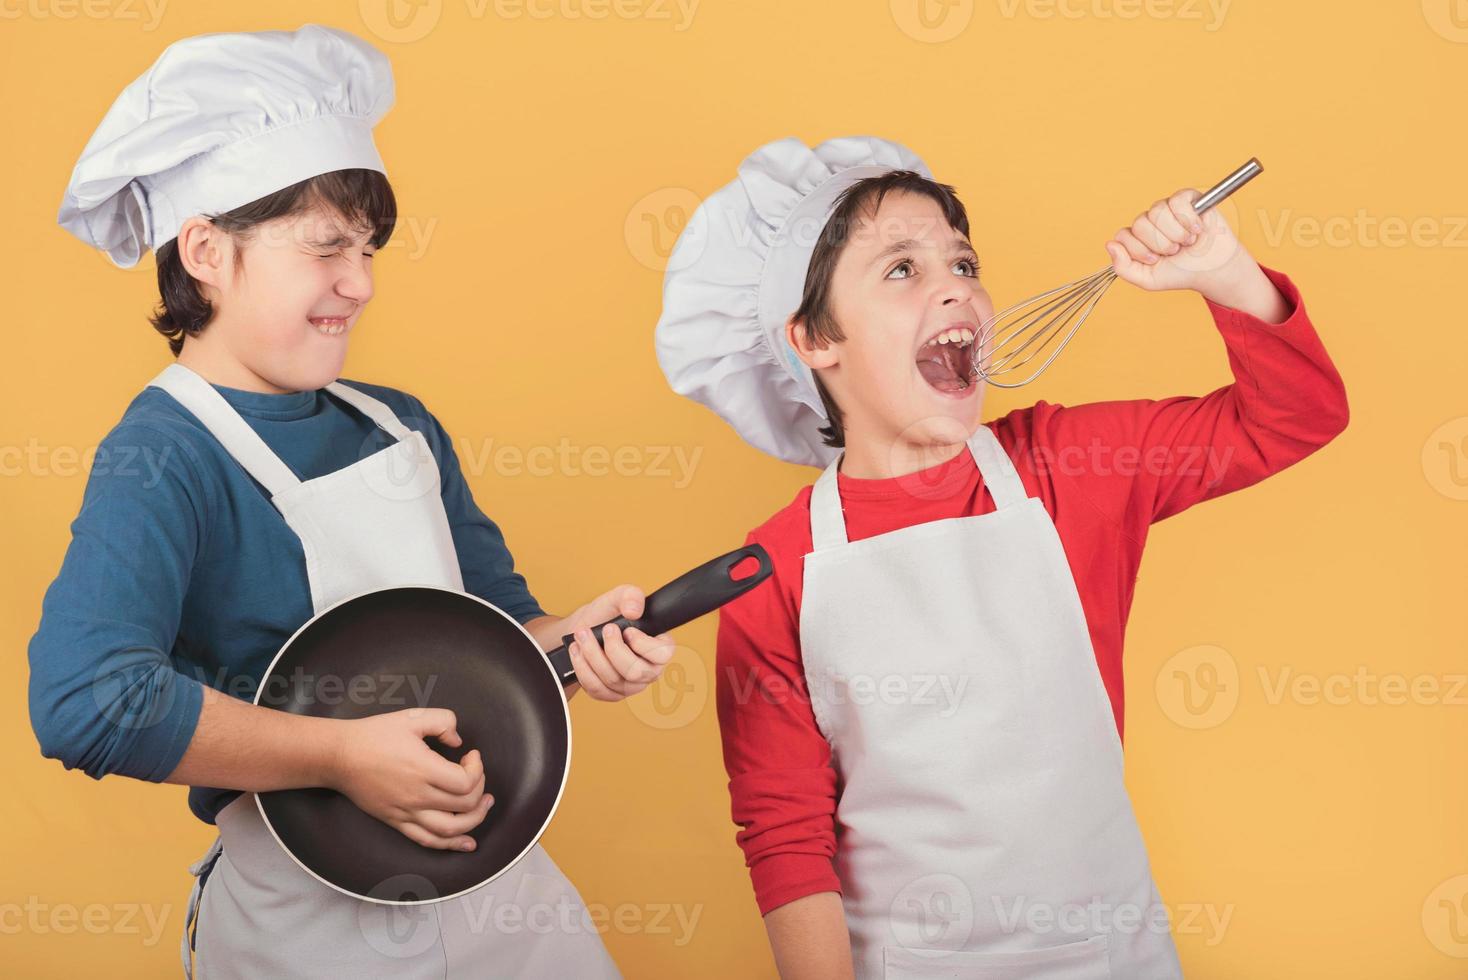 grappige jongens die zingen met een koksmuts die de garde en pan vasthoudt foto